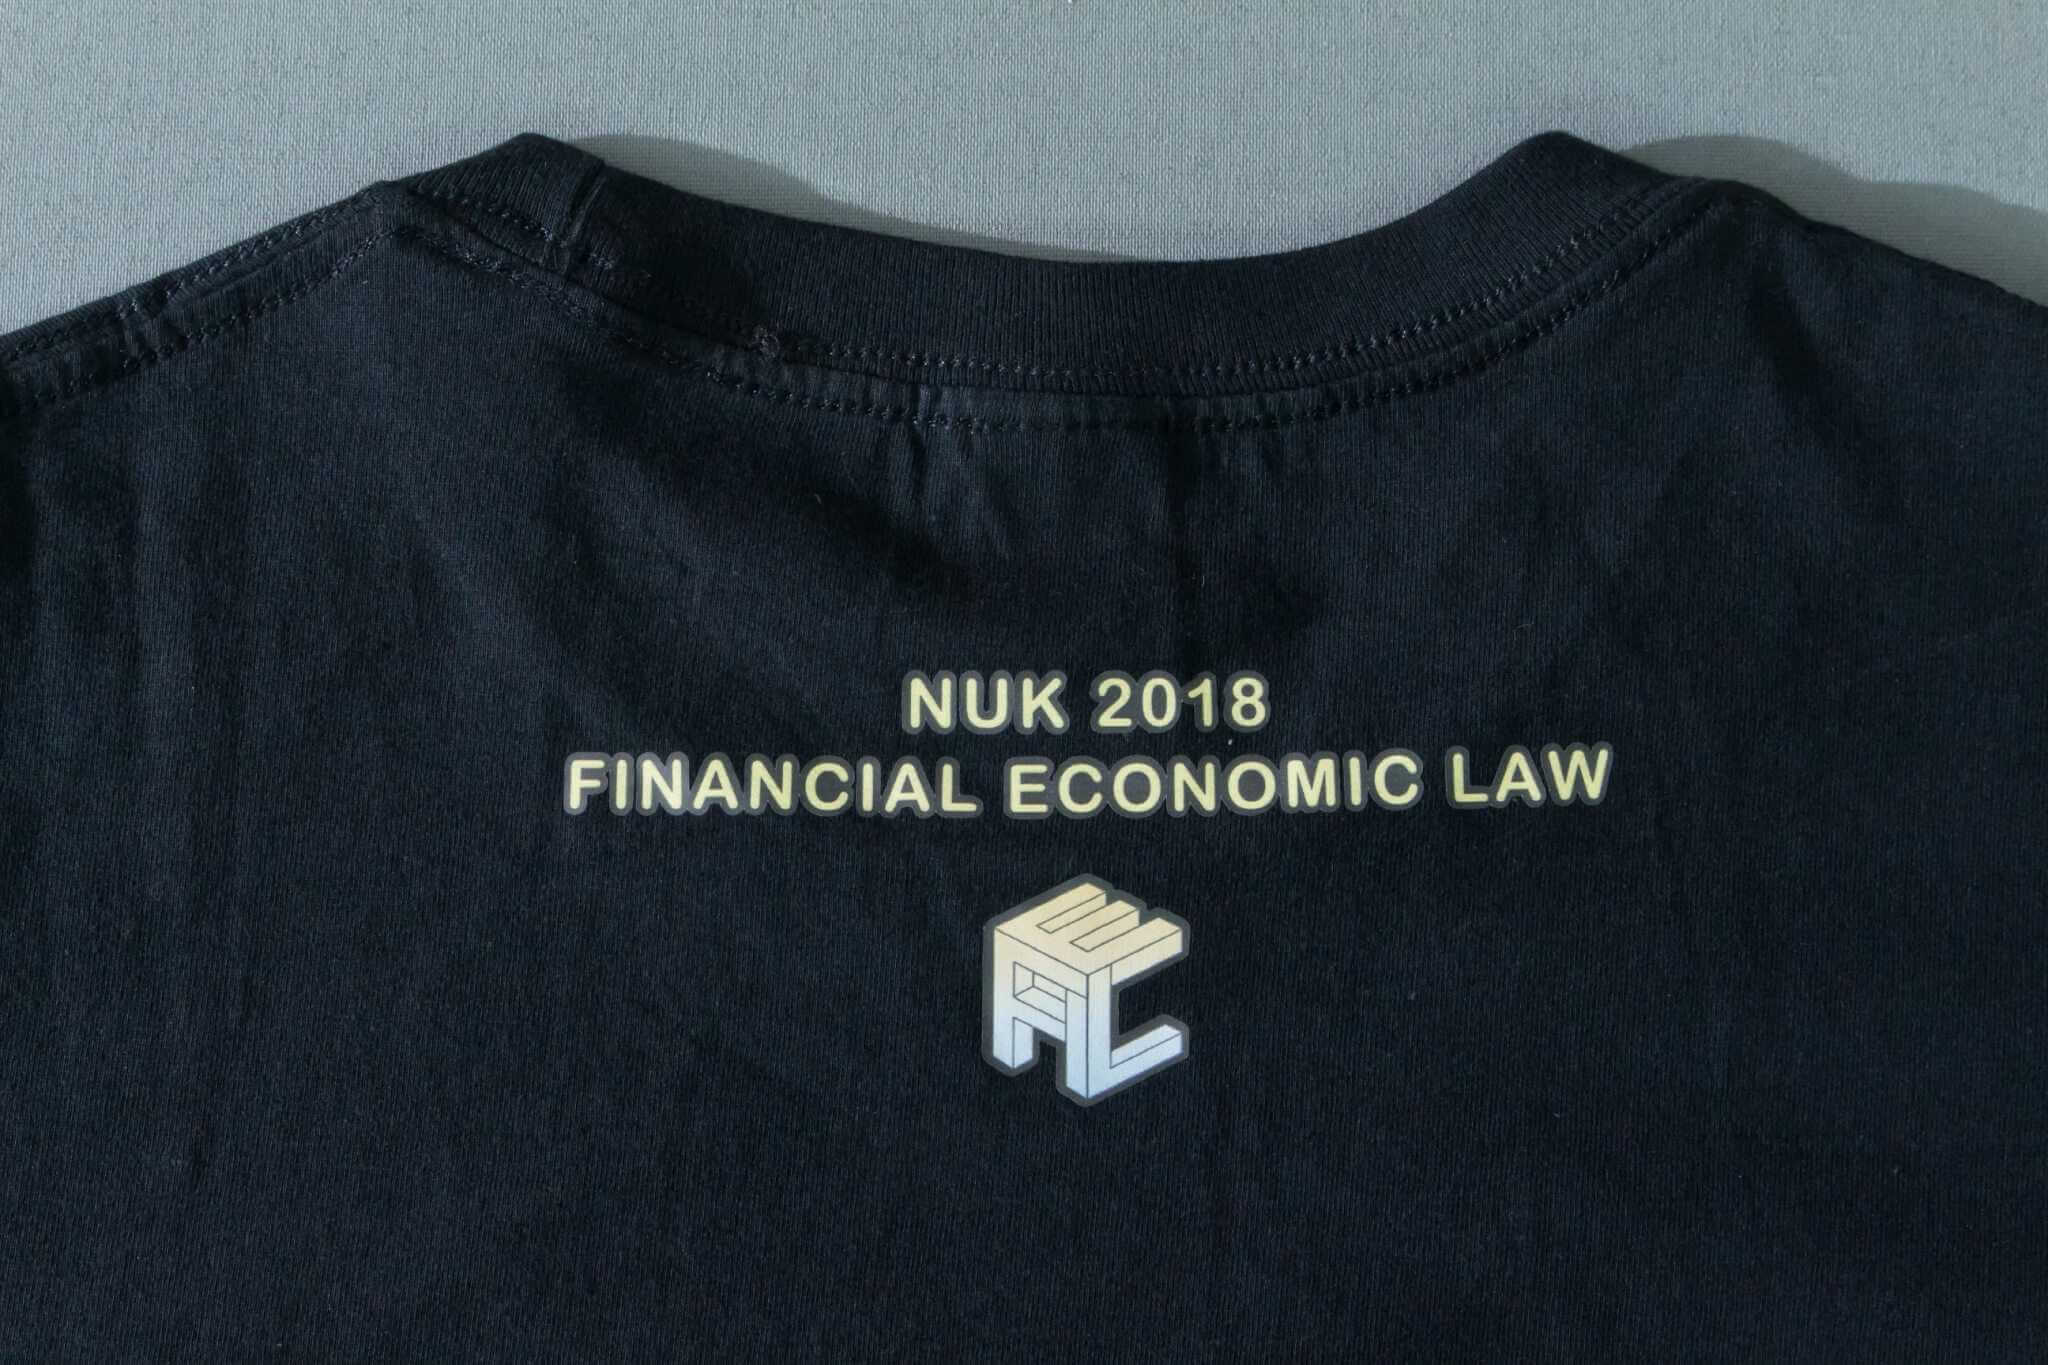 客製化T恤- NUK CAMP 客製T恤的第4張圖(客製化公司制服、班服製作、團體服製作等示意或作品圖)